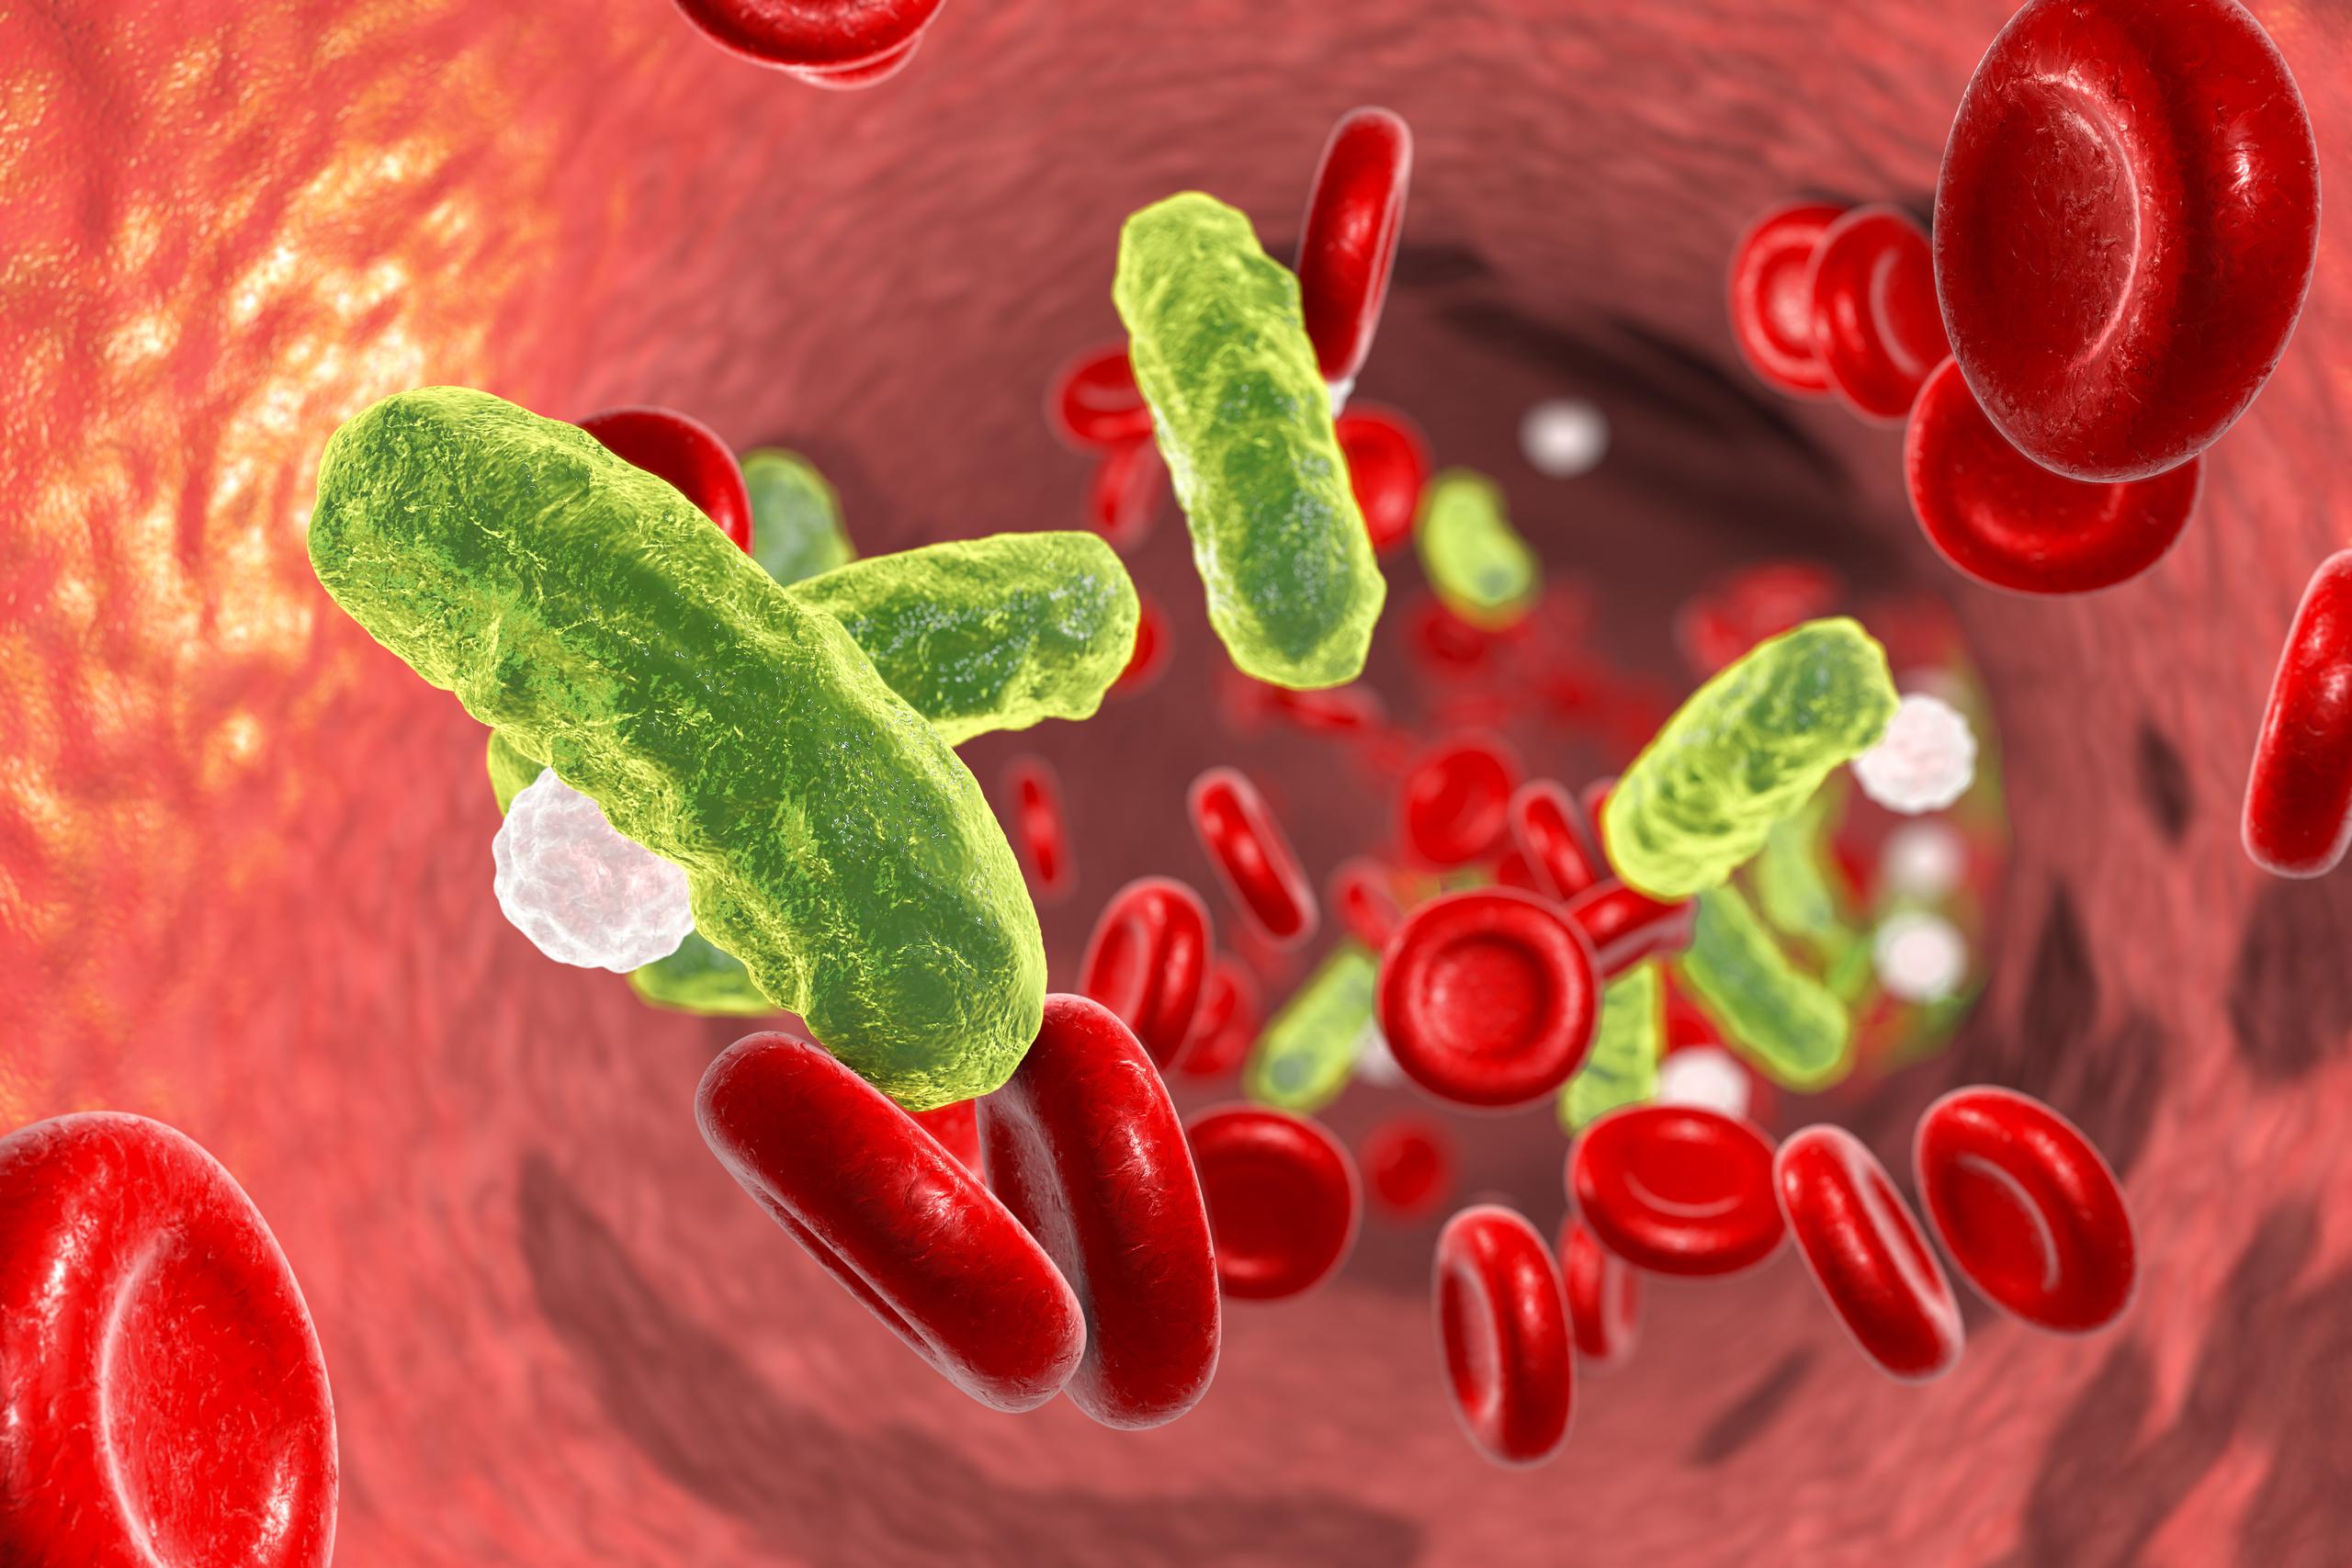 La sepsis se ubicó como un factor determinante de enfermedad y mortalidad en un contexto epidemiológico. (Shutterstock)